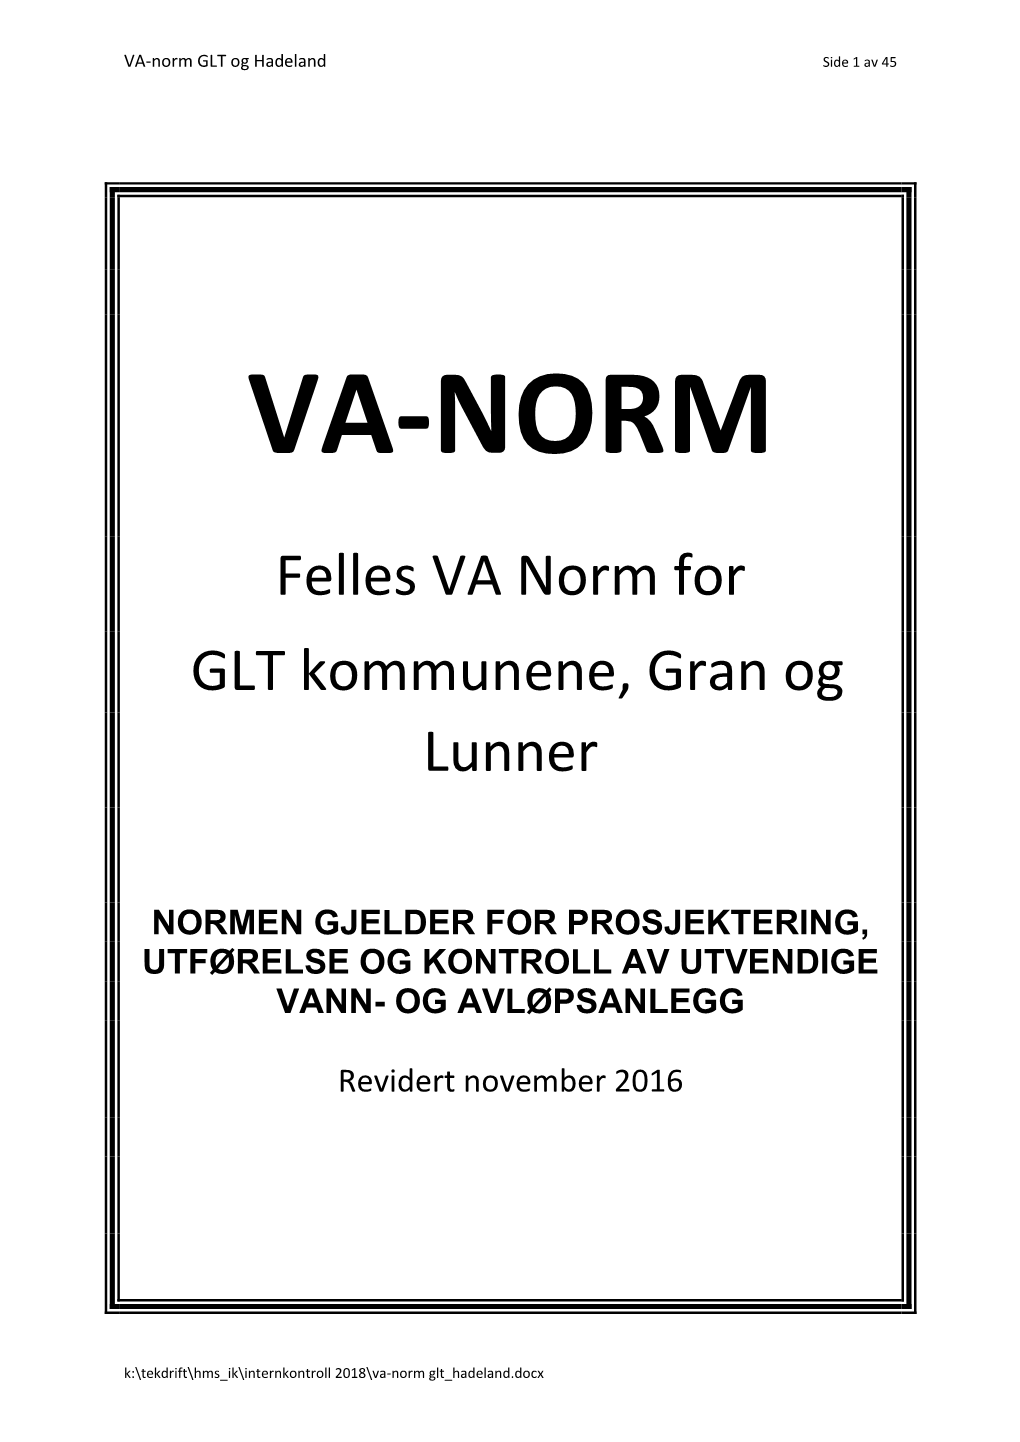 Felles VA Norm for GLT Kommunene, Gran Og Lunner